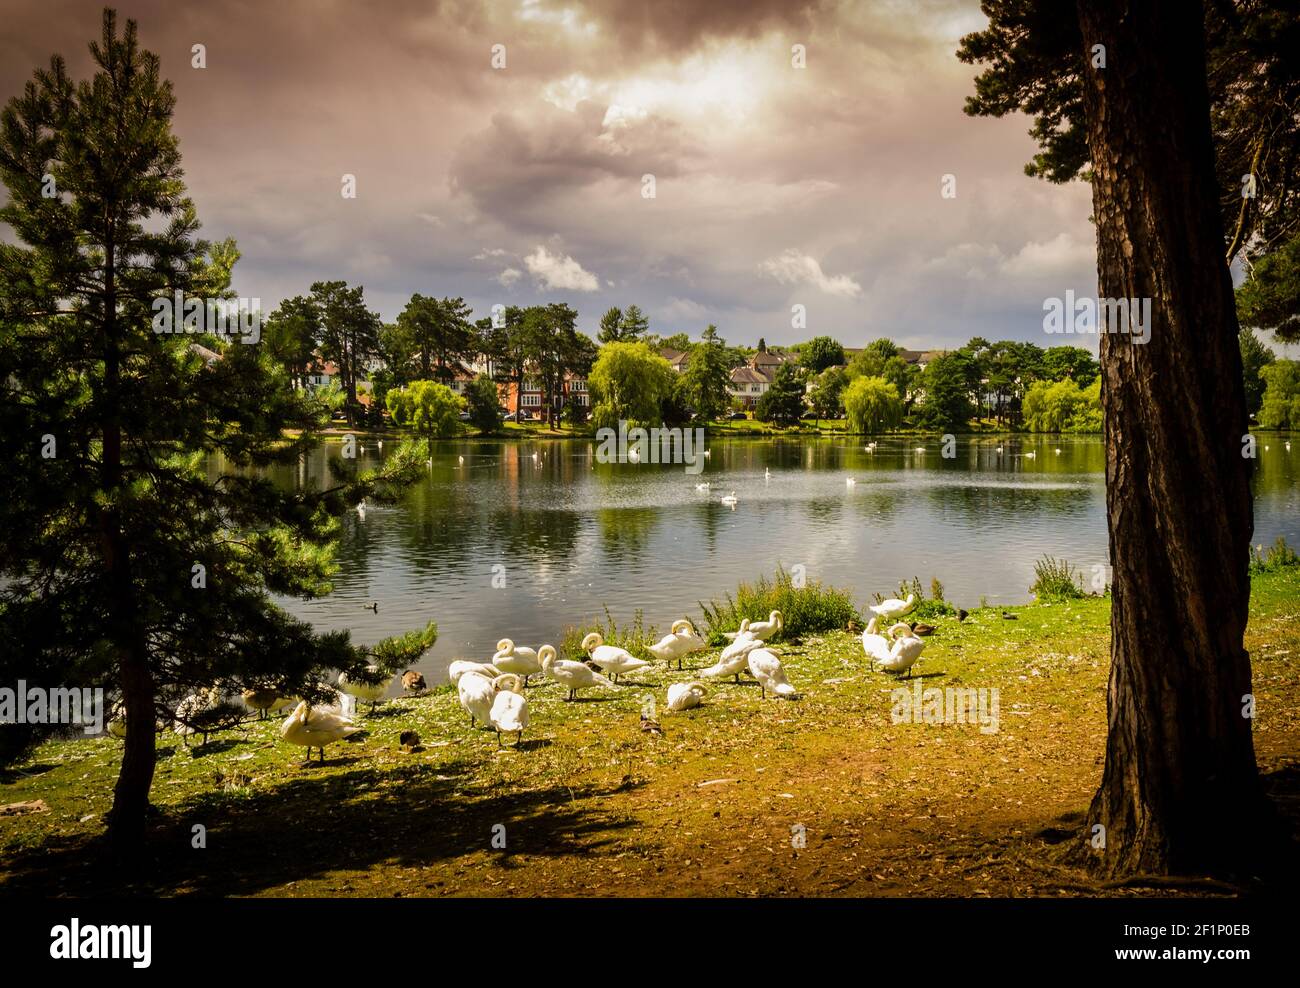 Cigni e anatre godendo il sole prima di una tempesta sul lago Roath Park a Cardiff, Galles Foto Stock